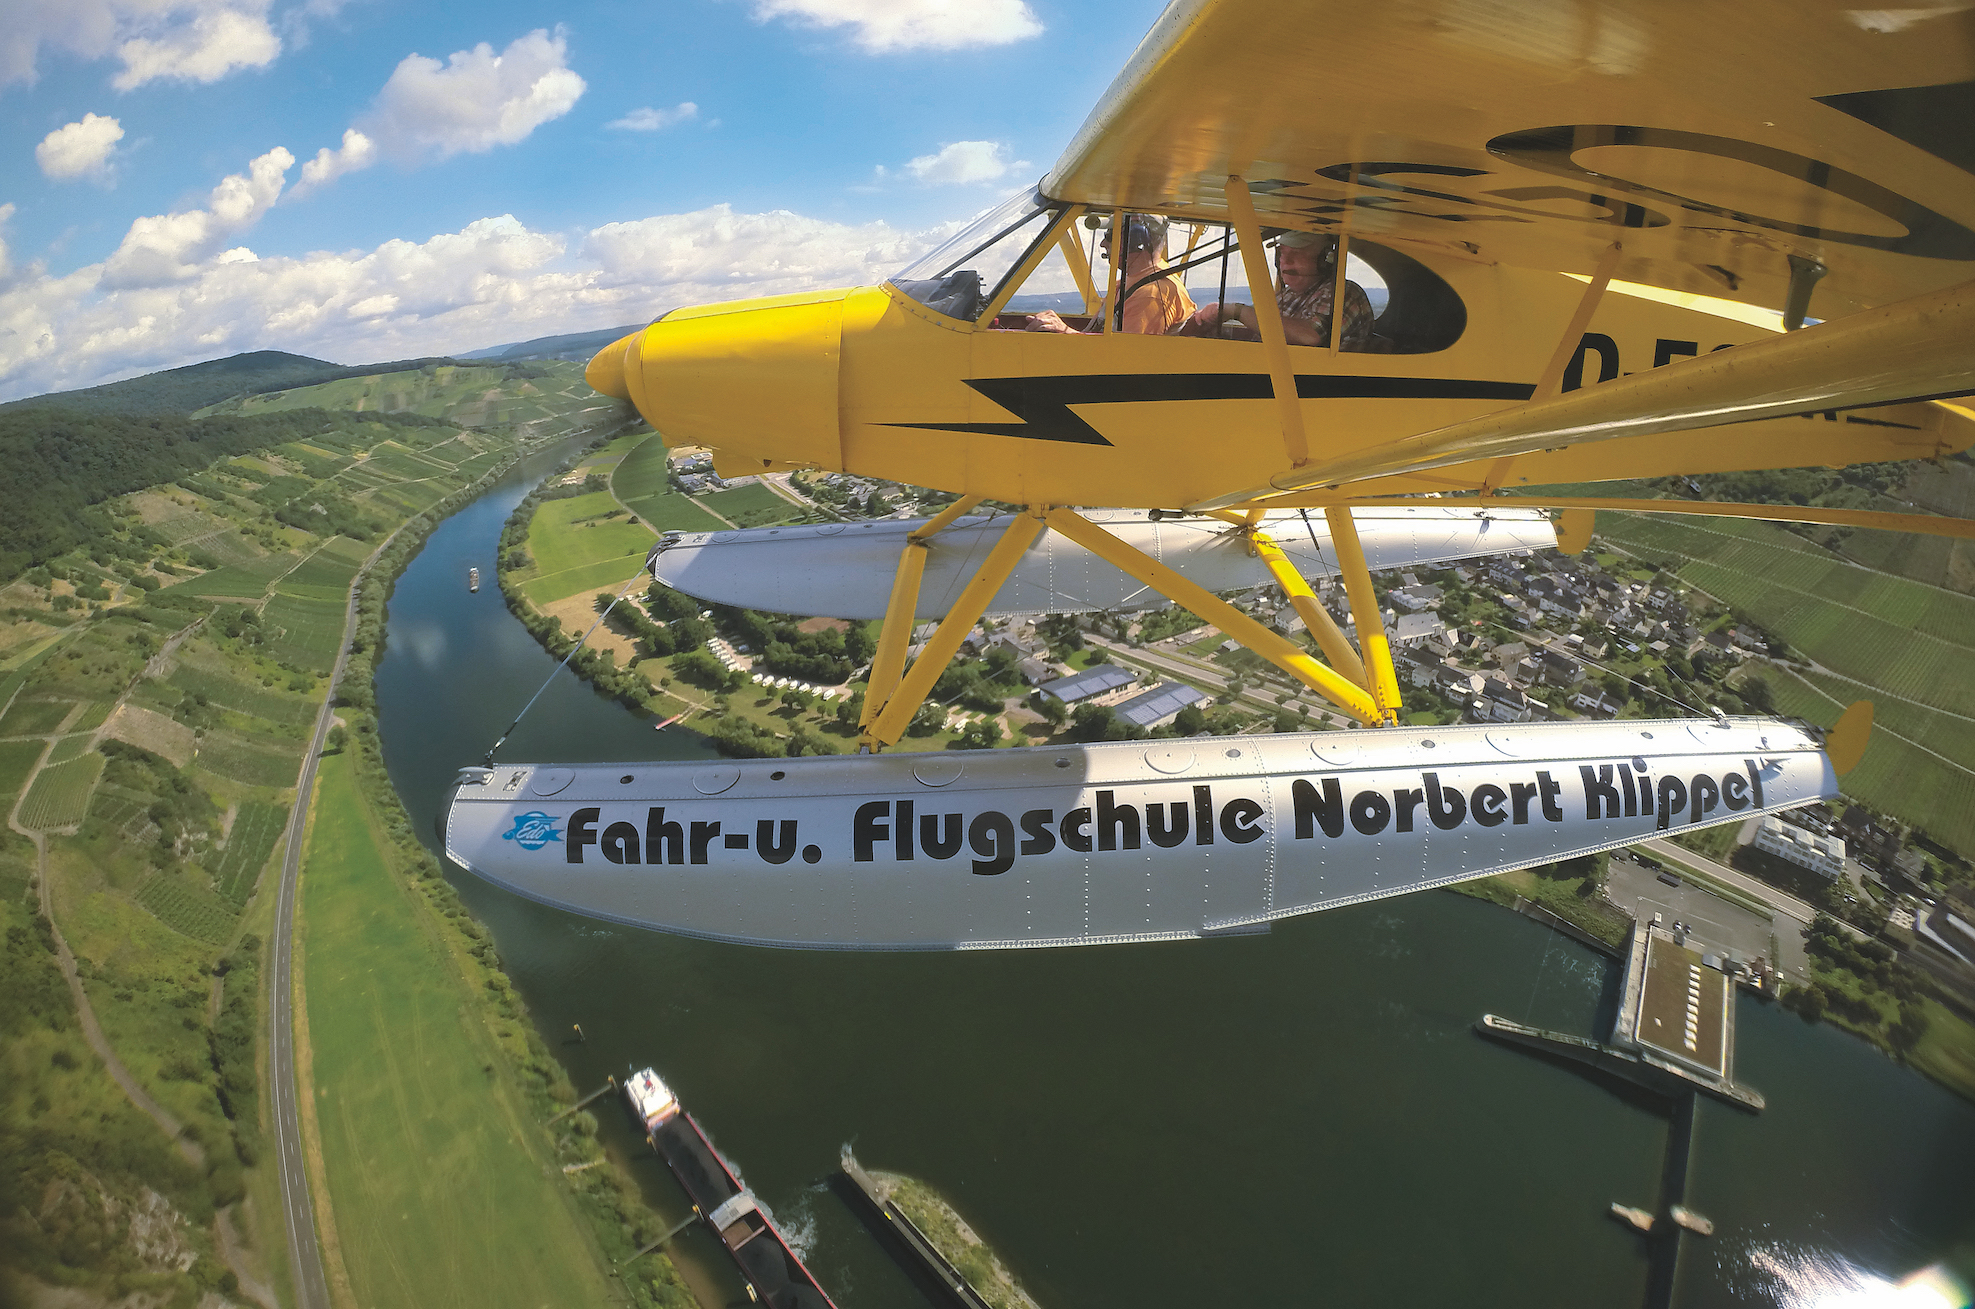 www.fliegermagazin.de